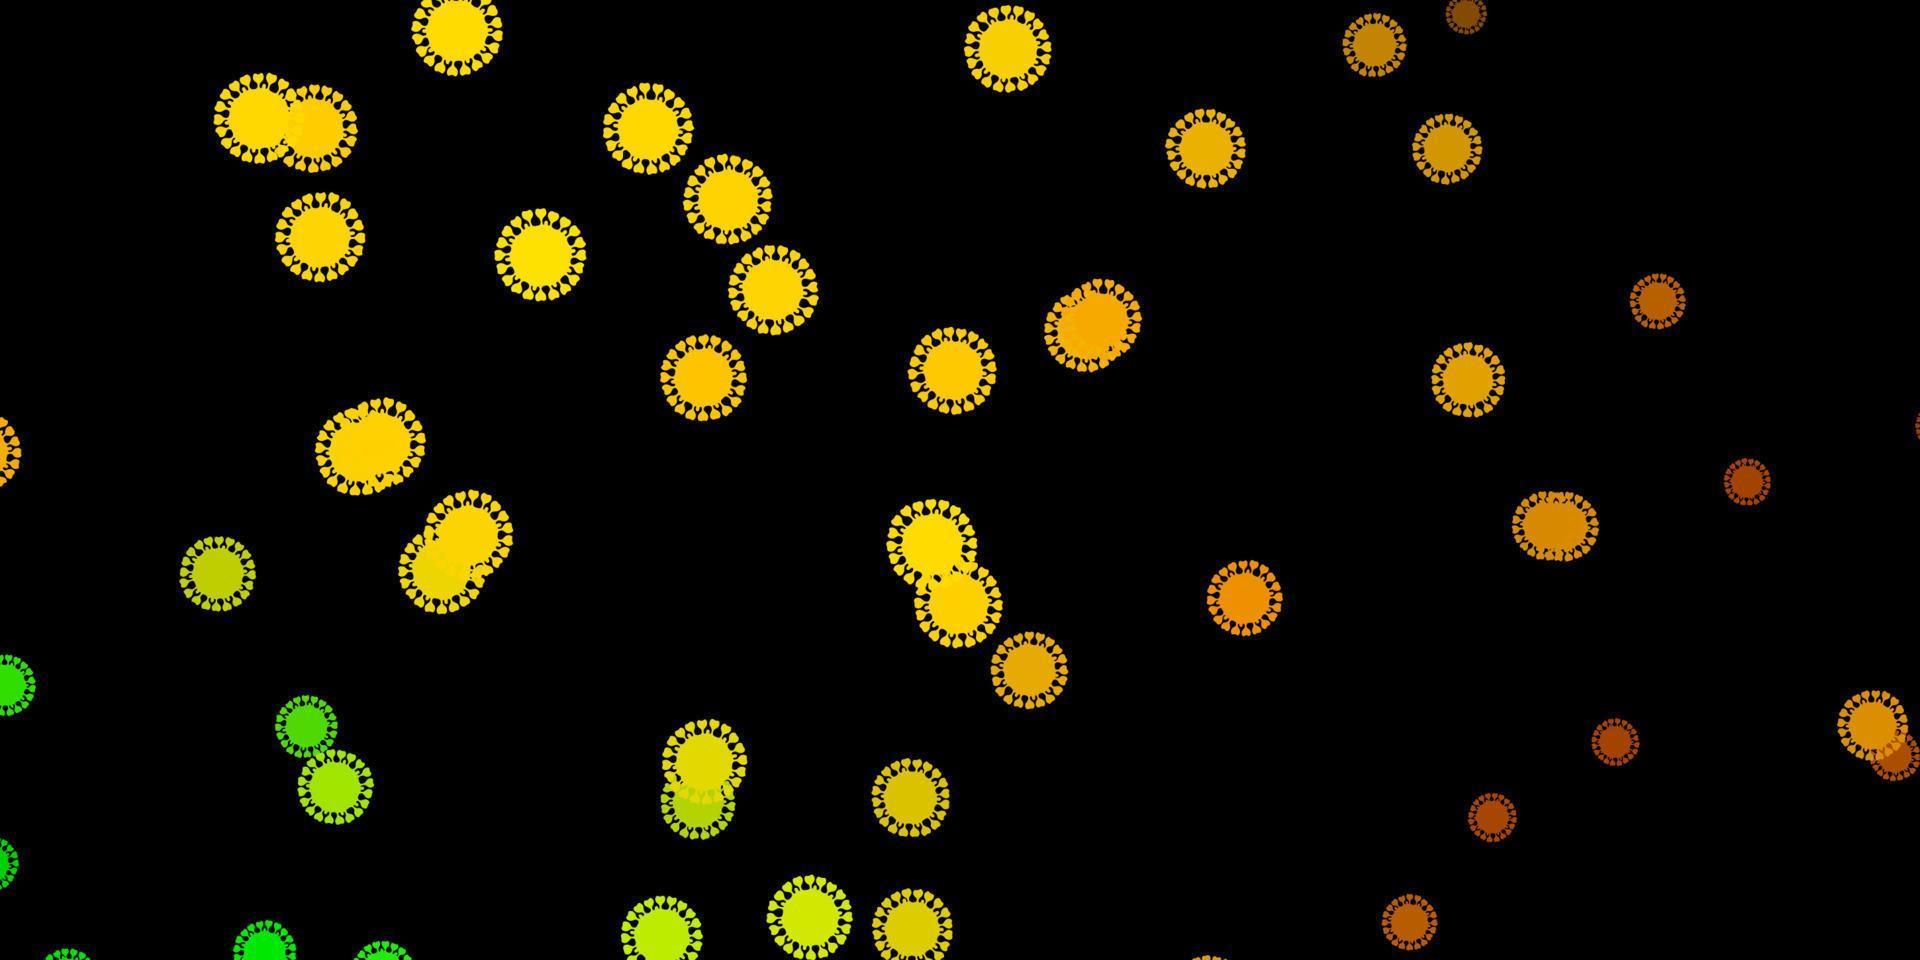 mörkgrön, gul vektorbakgrund med virussymboler. vektor